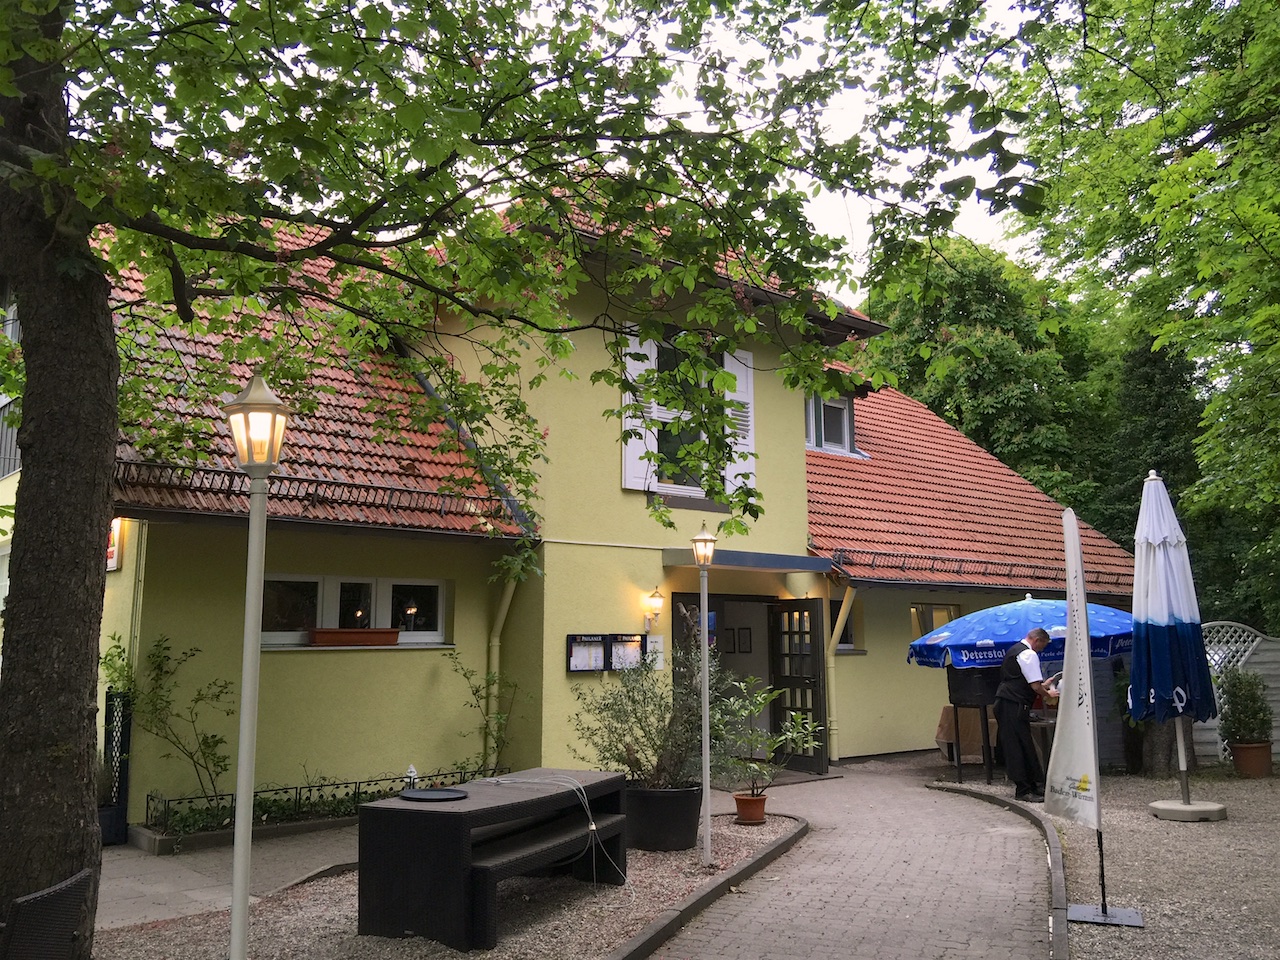 160522_Schützenhaus01